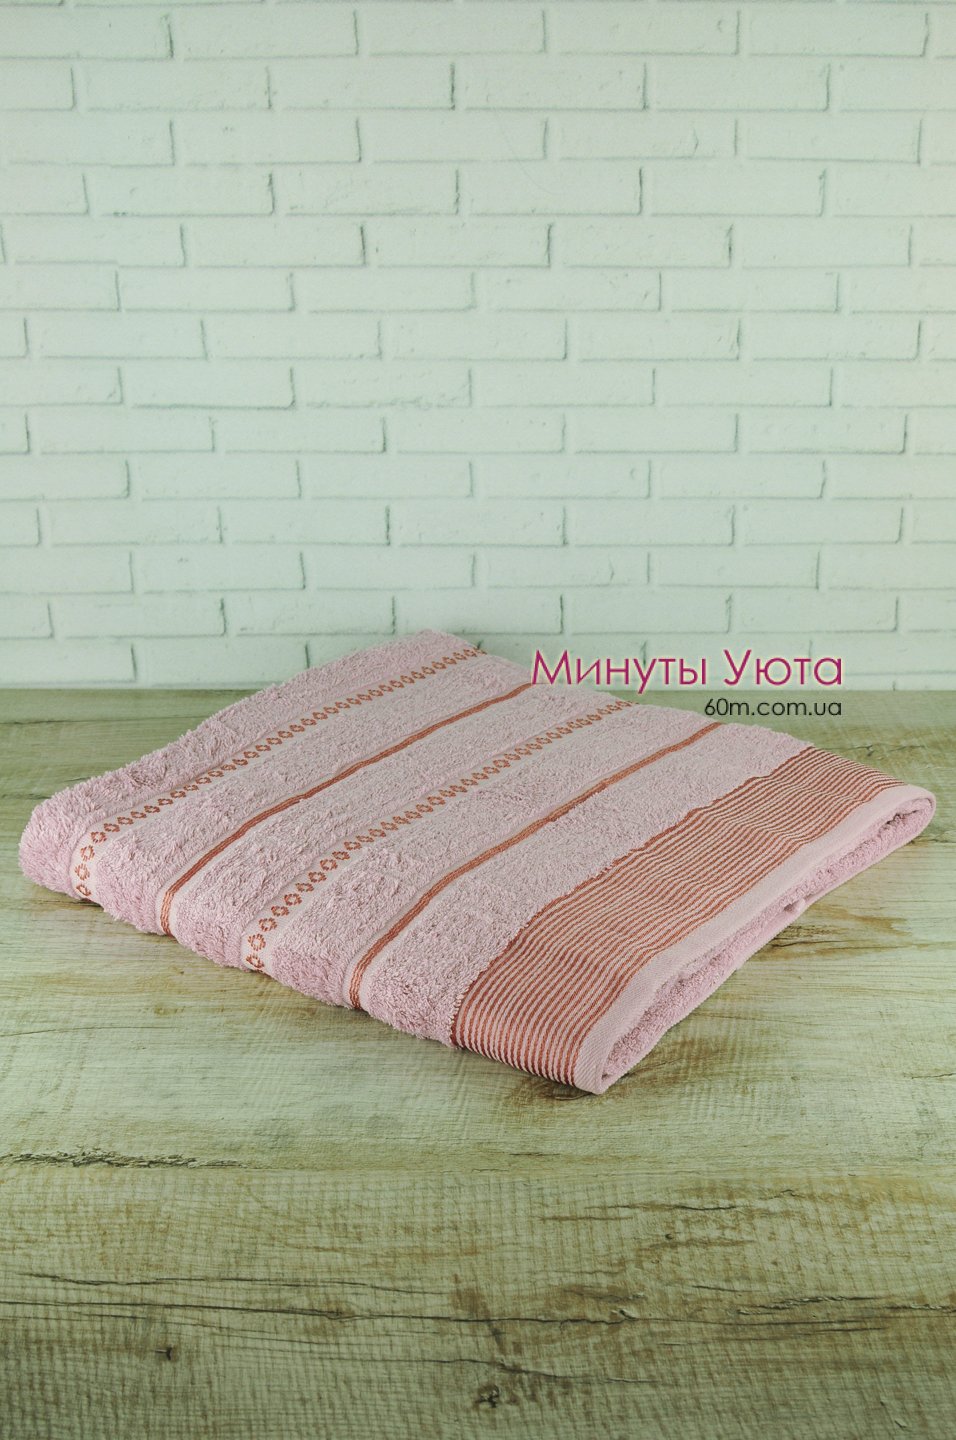 Розовое полотенце для сауны 